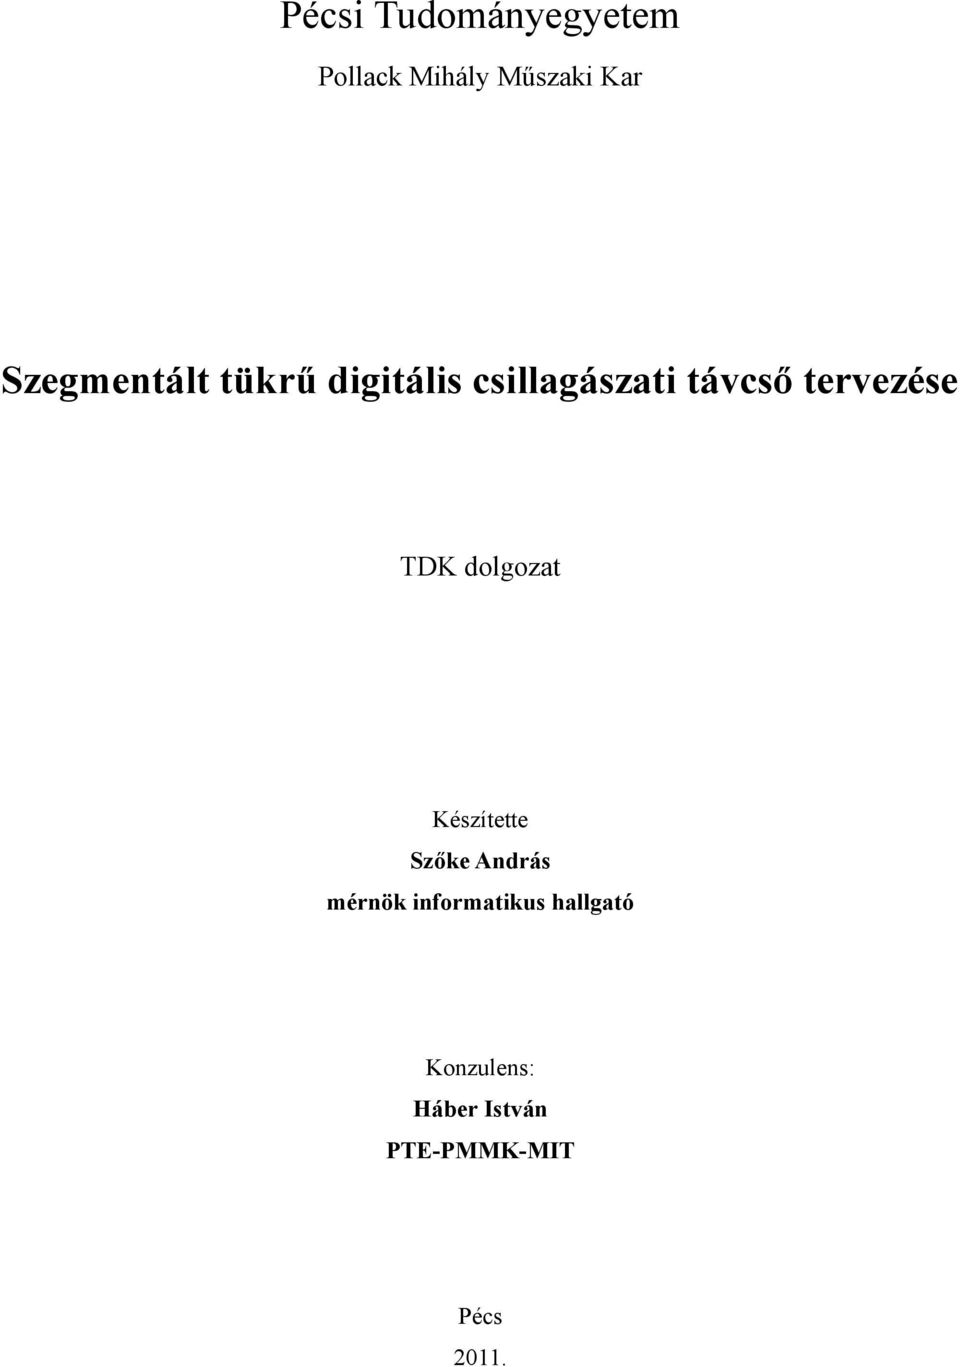 Pécsi Tudományegyetem. Szegmentált tükrű digitális csillagászati távcső  tervezése - PDF Ingyenes letöltés